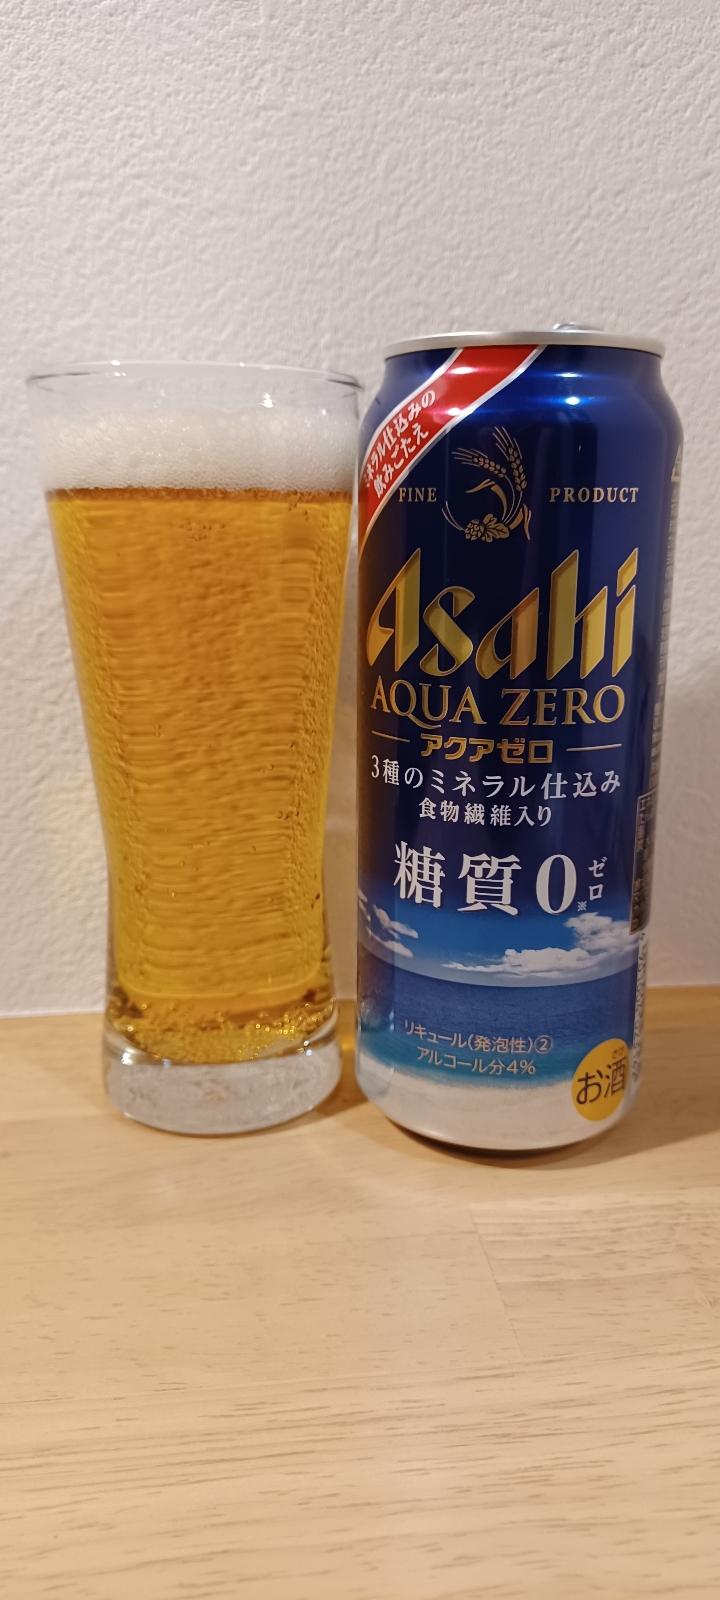 Asahi Aqua Zero